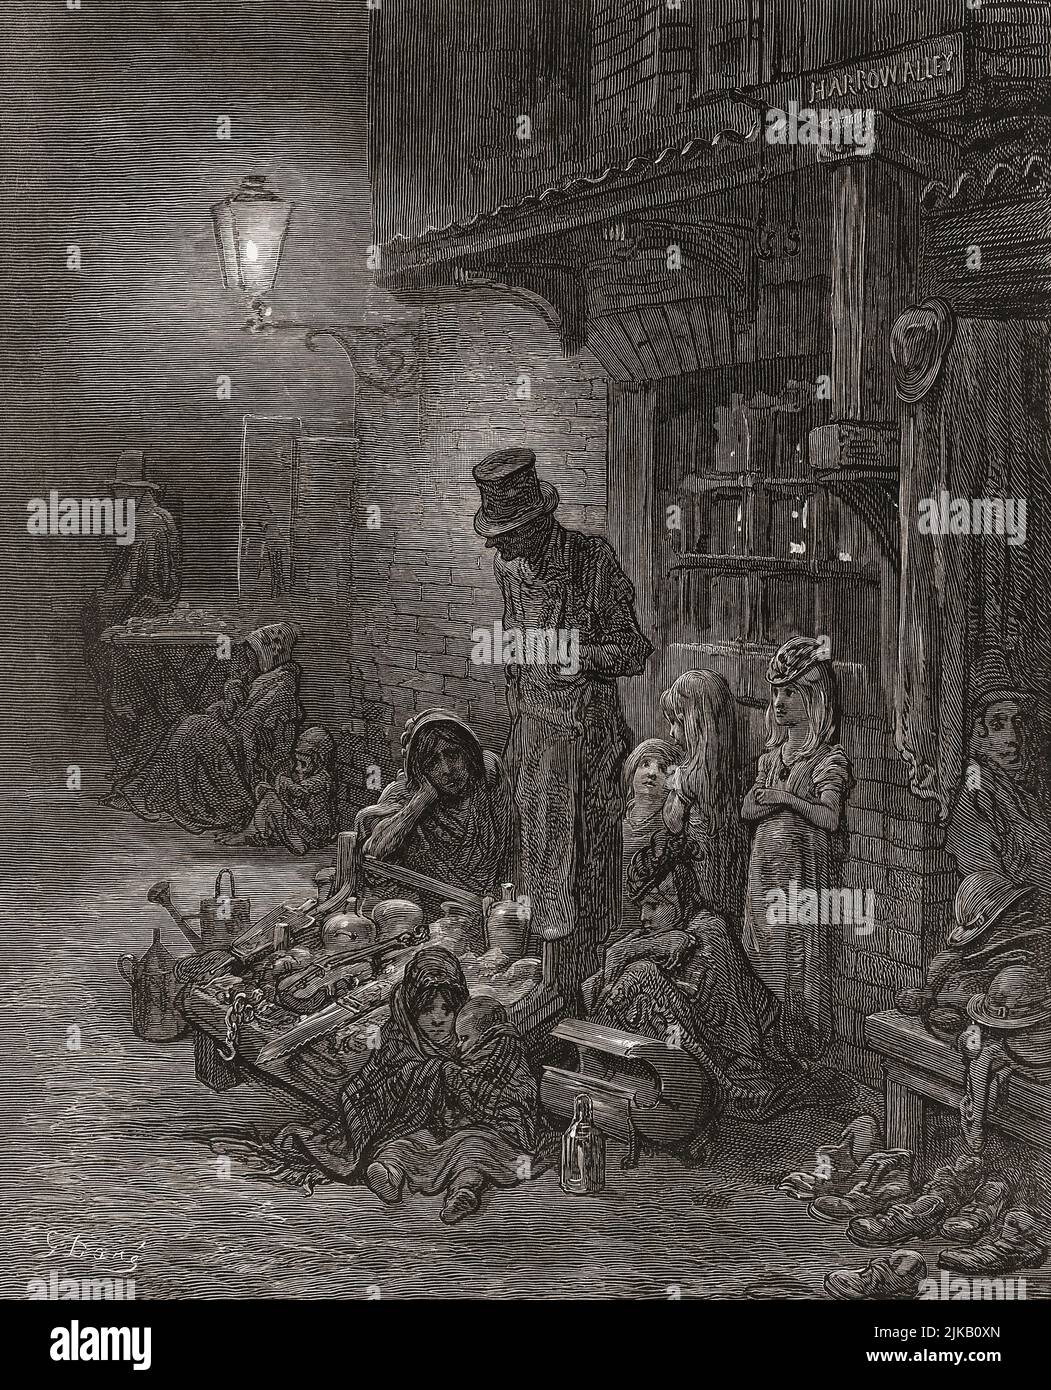 Untitled trabajo mostrando la pobre familia londinense vendiendo bienes en la calle en el siglo 19th. Después de una ilustración de Gustave Doré en la edición inglesa de 1873 de Londres: Una peregrinación, escrita por Blanchard Jerrold e ilustrada por Gustave Doré. Foto de stock